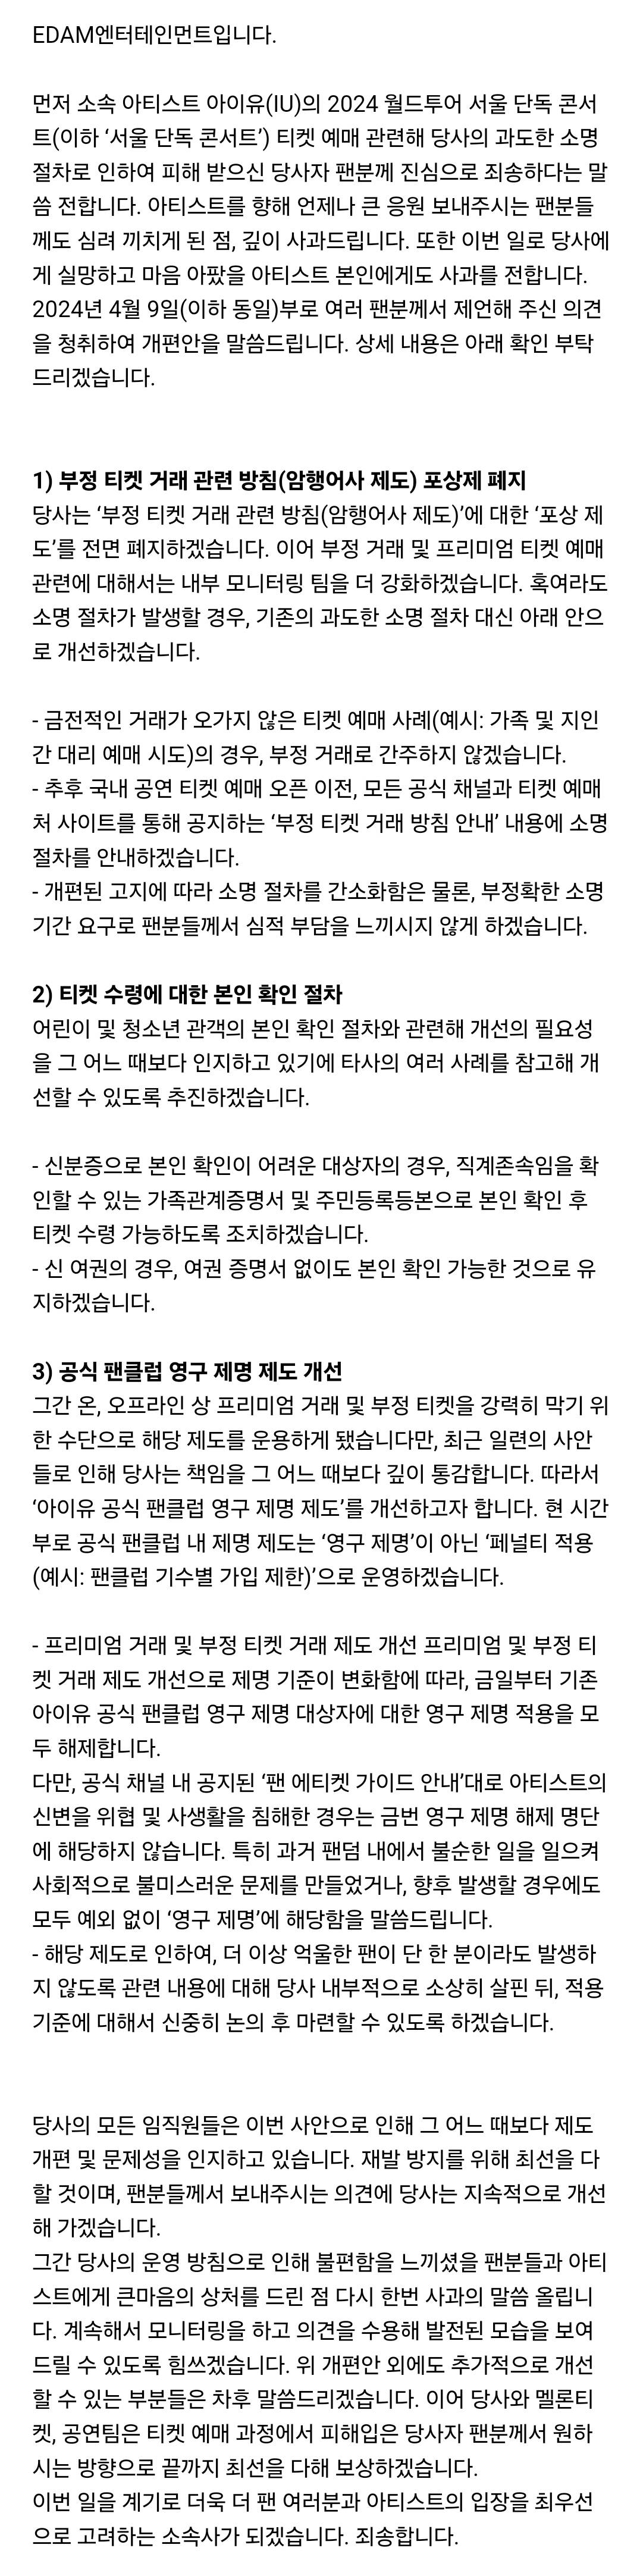 아이유 소속사 콘서트 소명 절차 관련 입장문 | 인스티즈